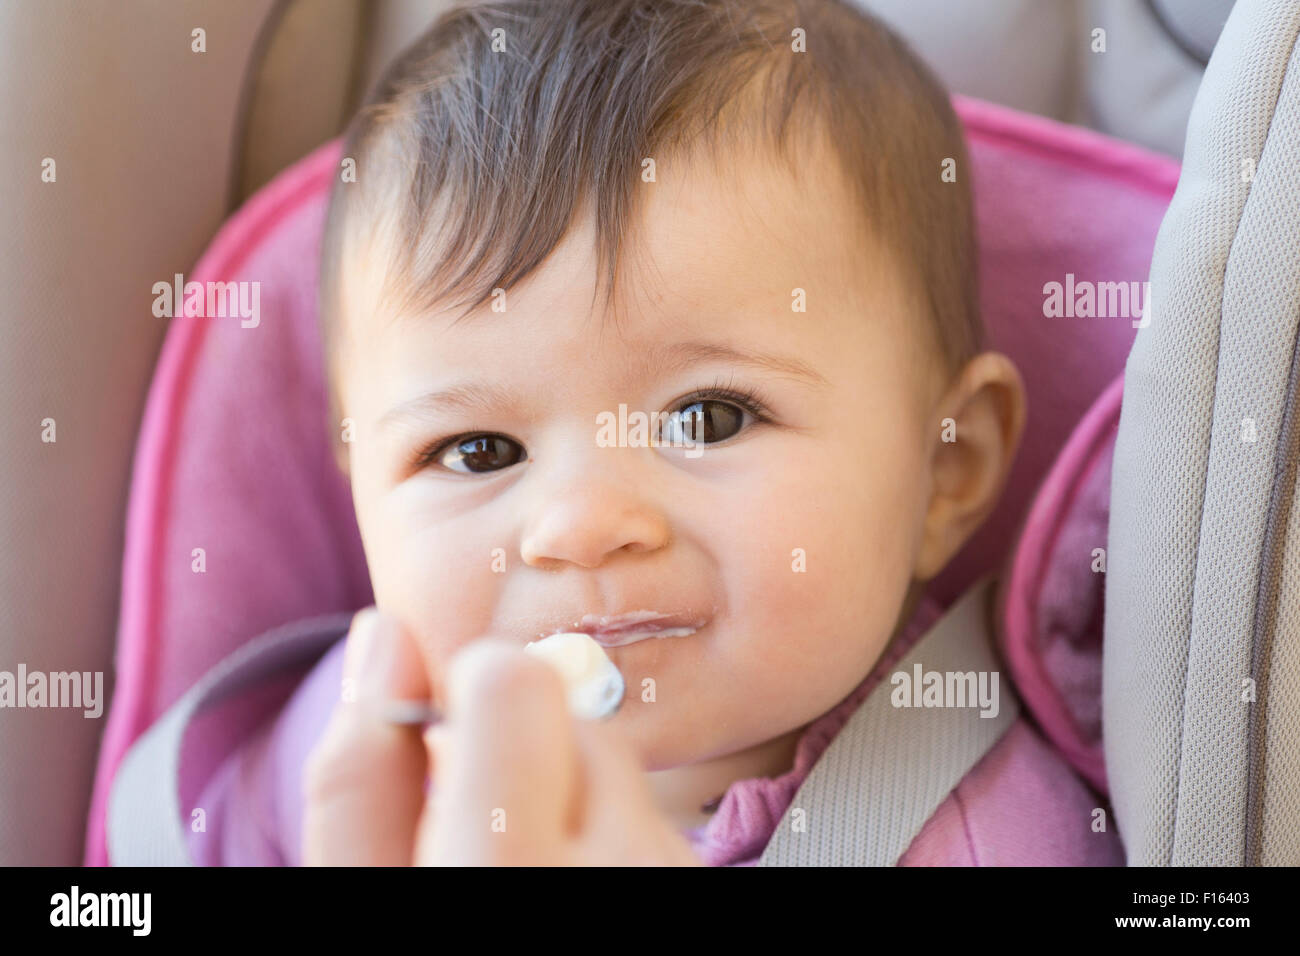 Une petite fille de six mois blanc manger une cuillère de yaourt et looking at camera Banque D'Images